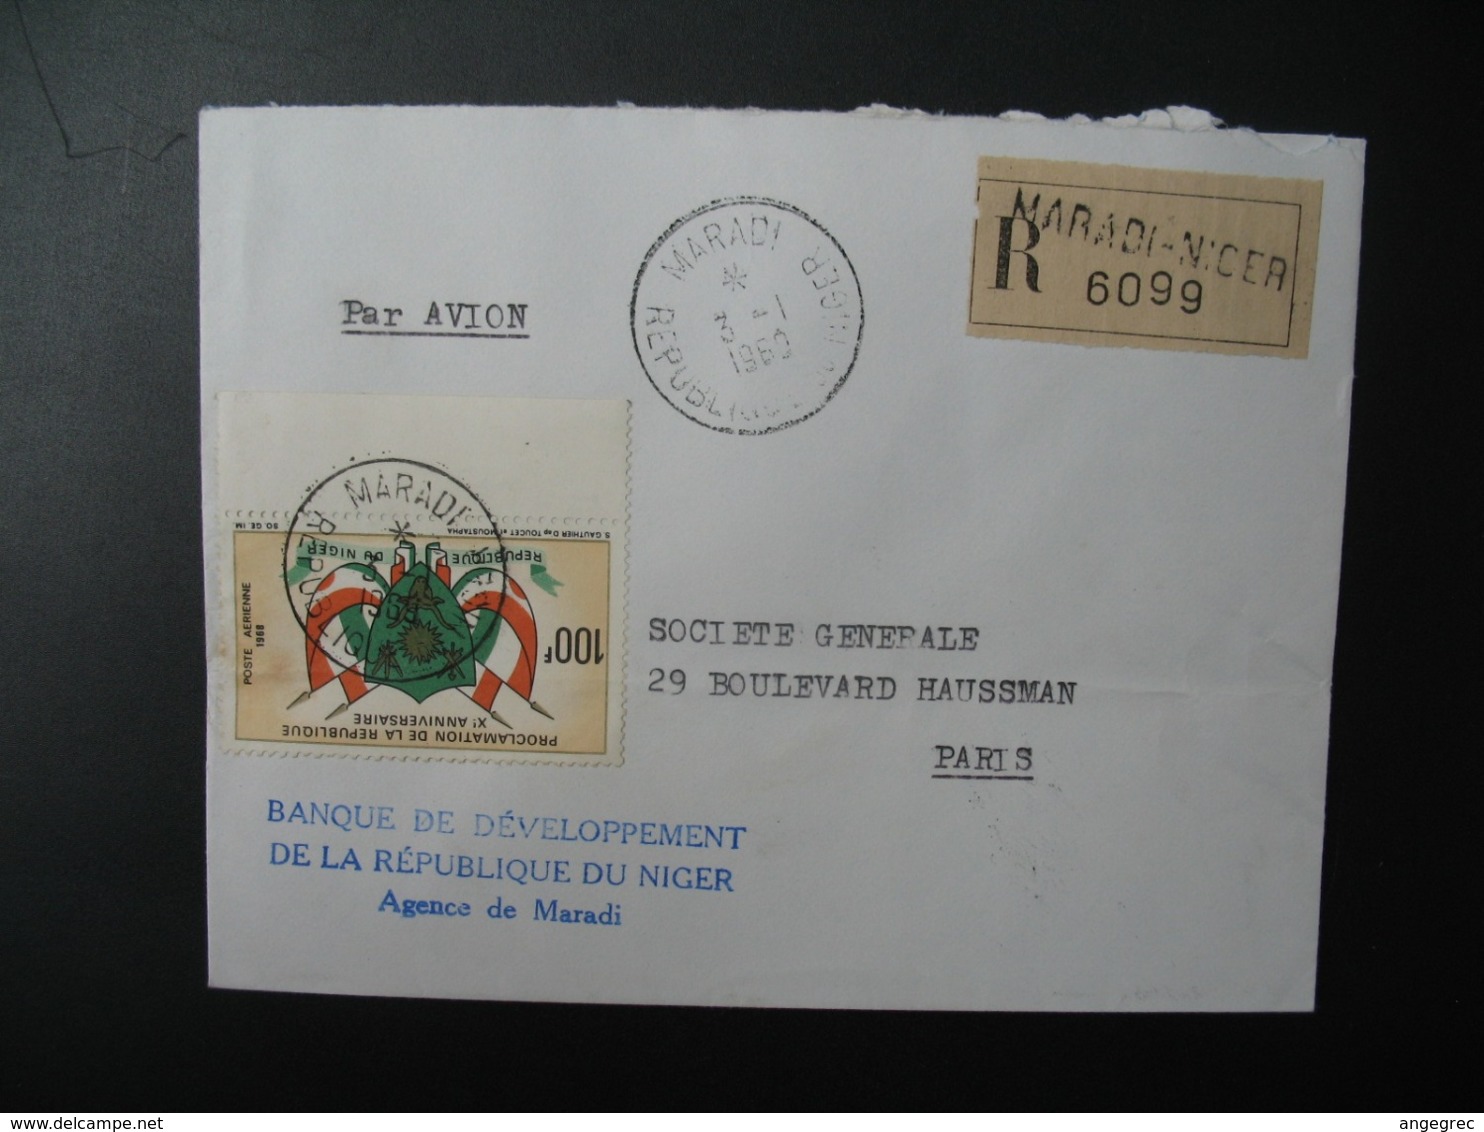 Niger   Lettre Recommandée N° 6099  - 1960  Agence Maradi   Pour La Sté Générale En France   Bd Haussmann   Paris - Níger (1960-...)